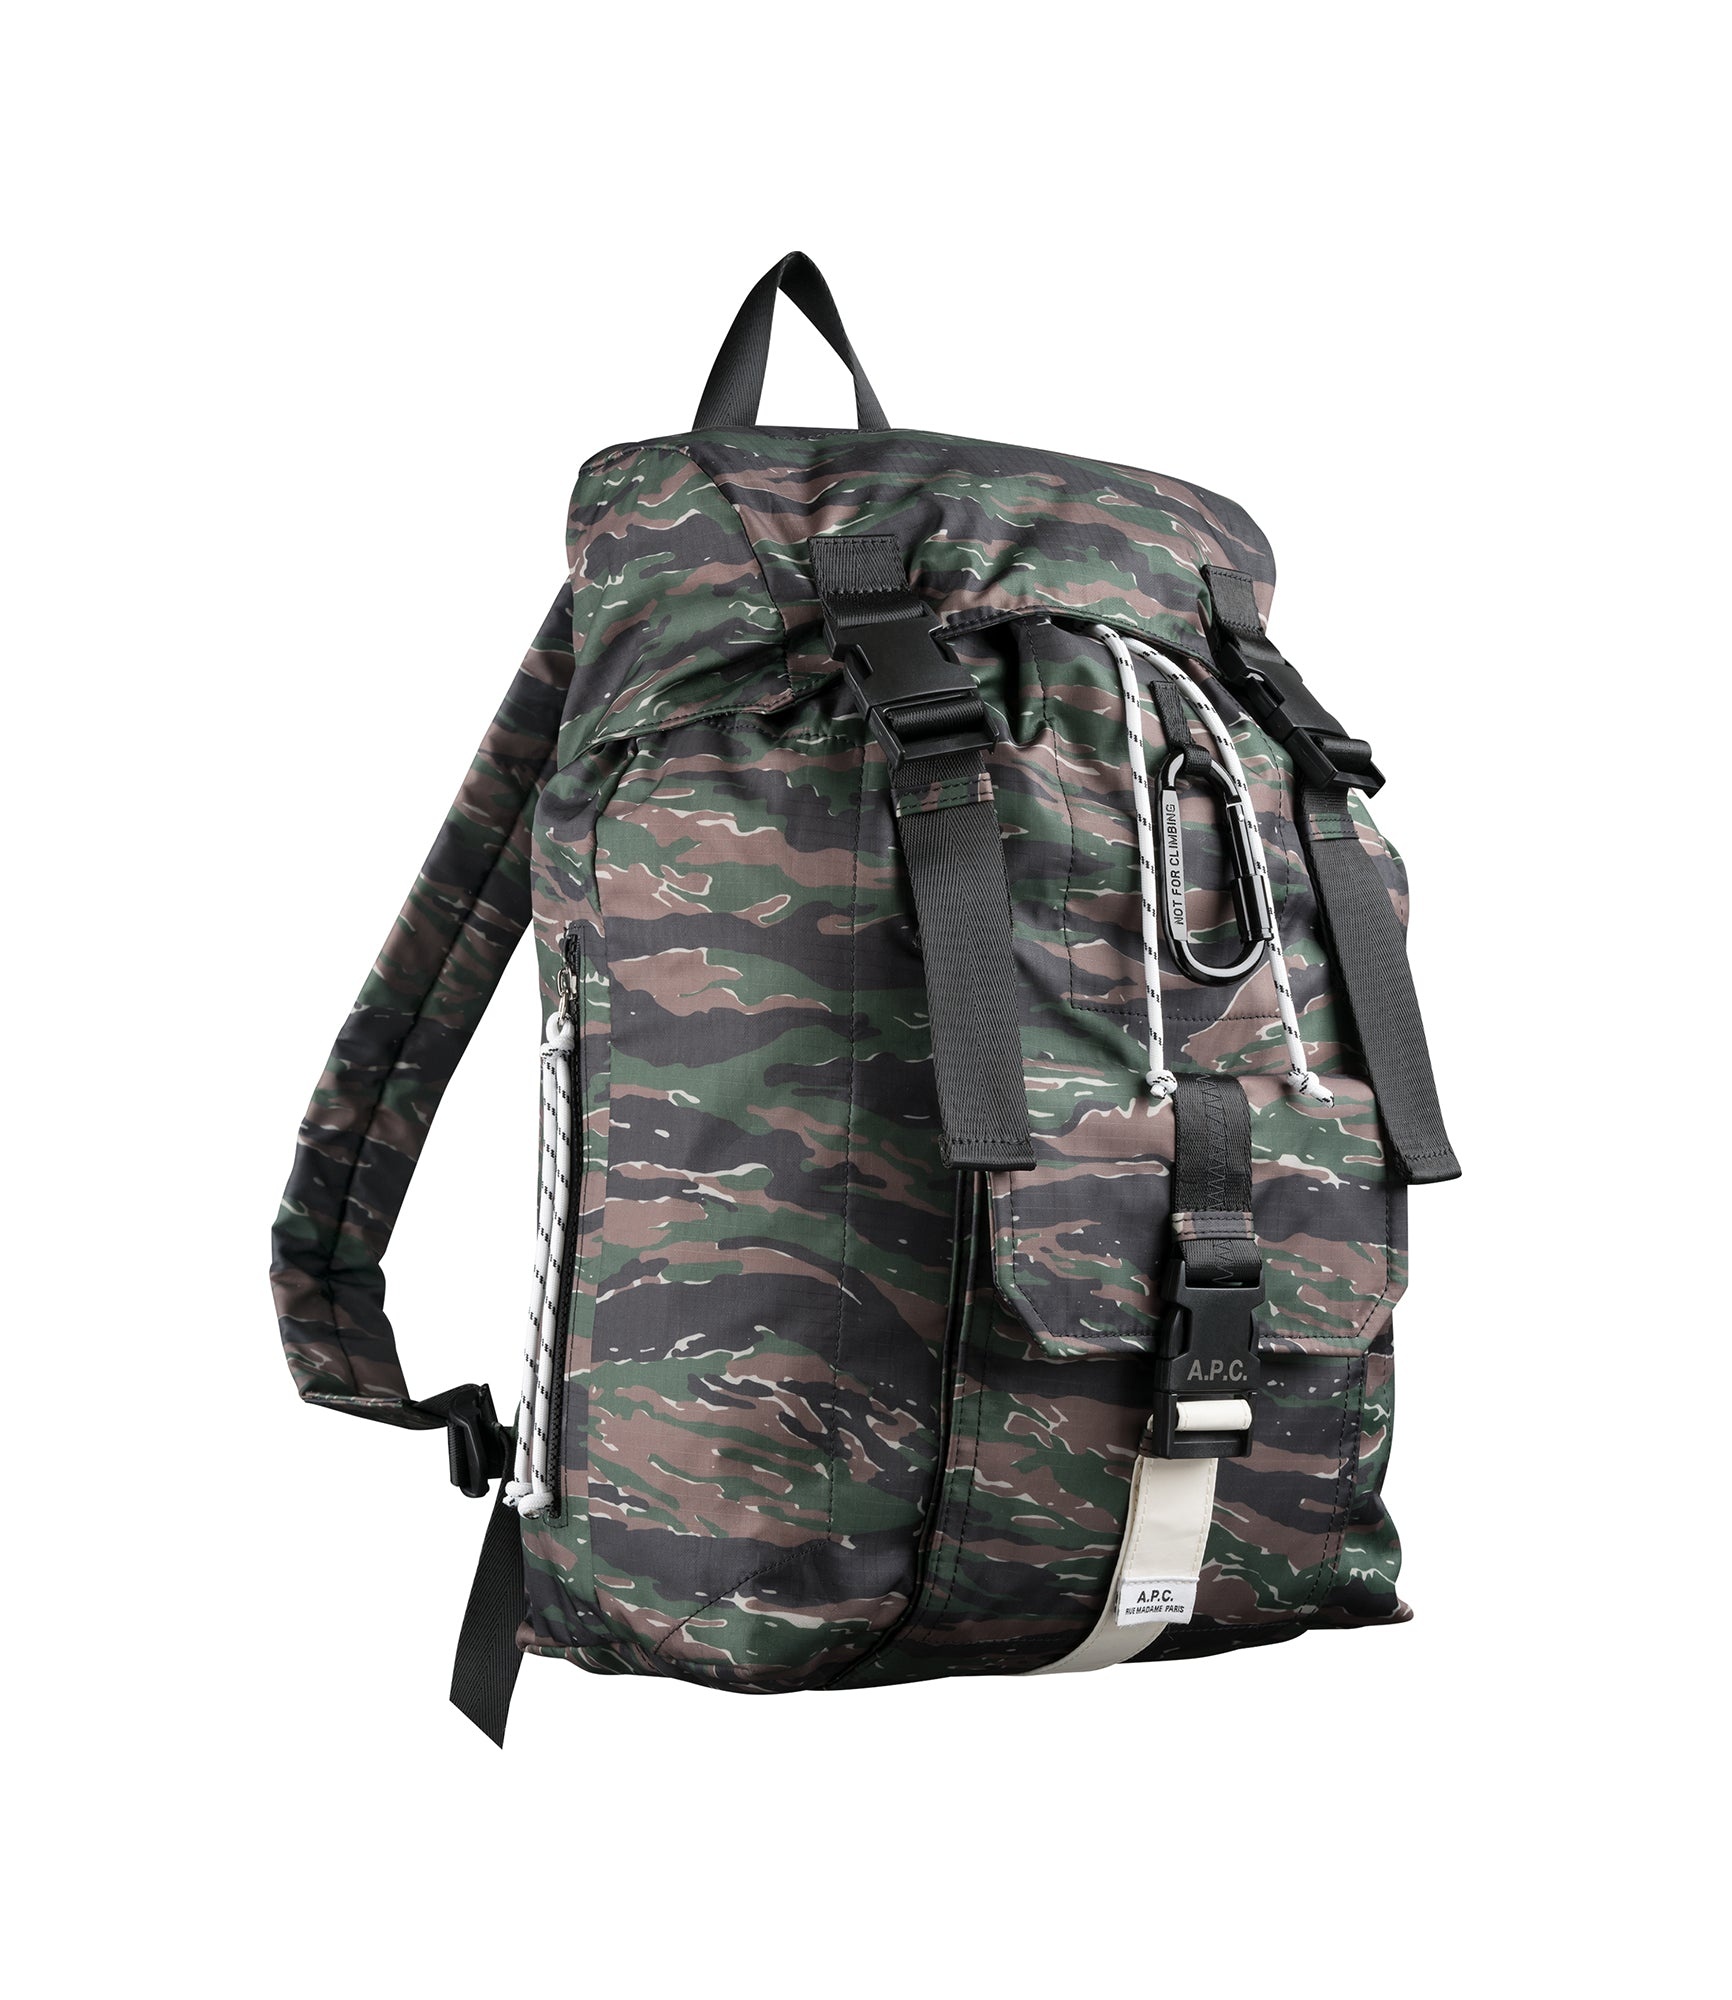 Trek backpack - 3